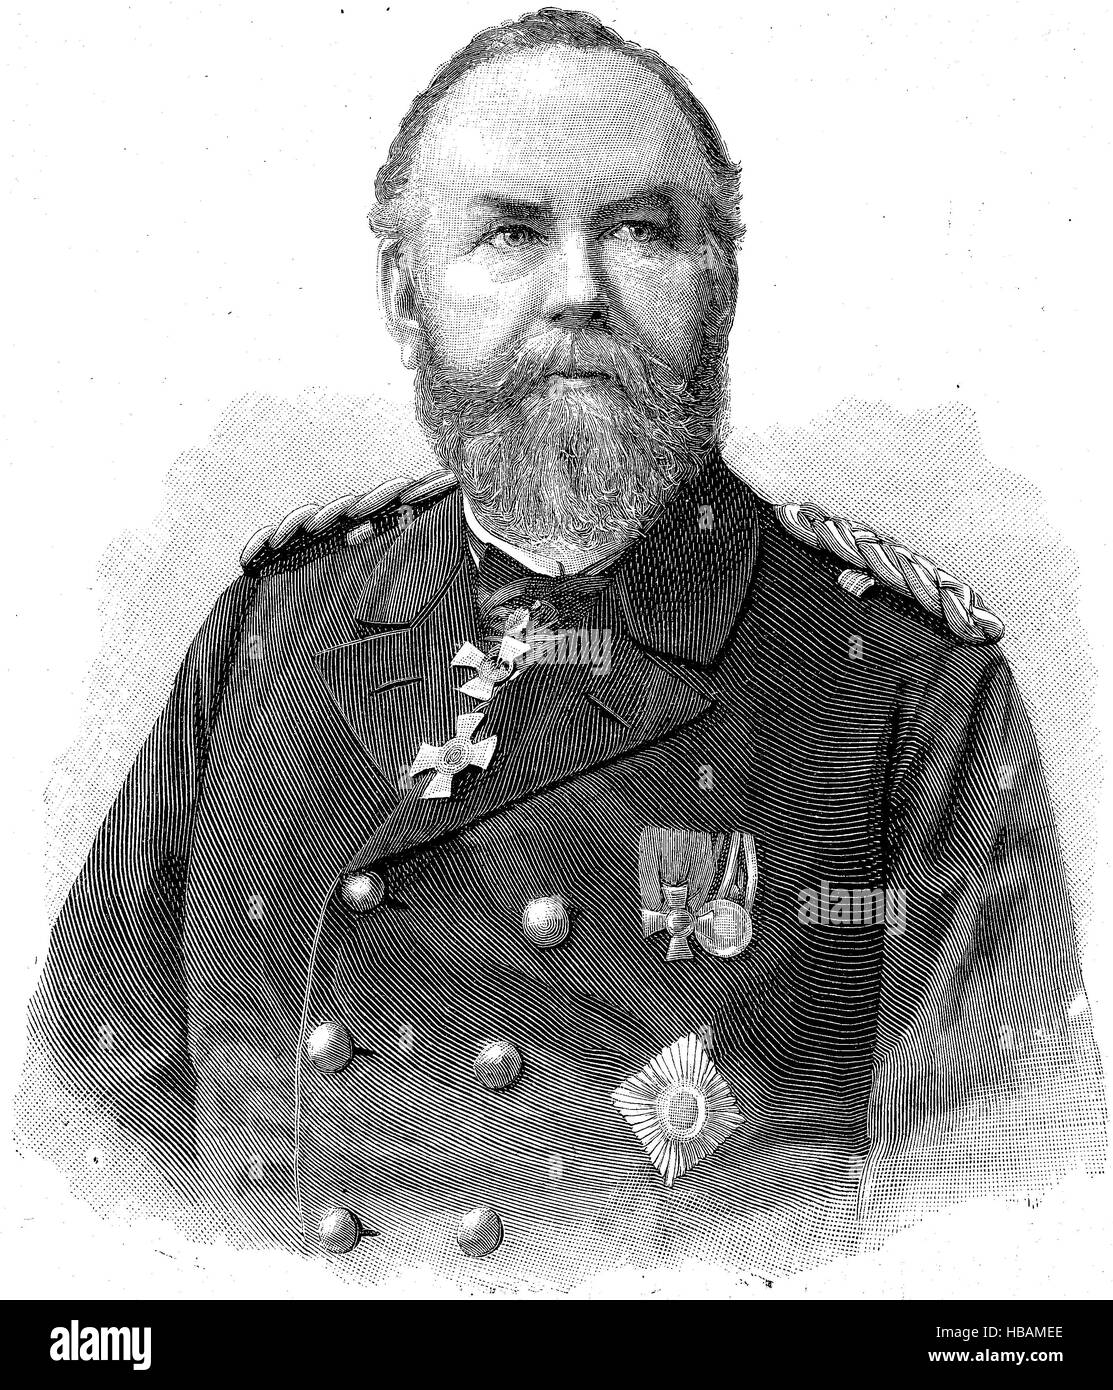 Vice Ammiraglio von der Goltz, Ammiraglio della Marina Tedesca, hictorical illustrazione dal 1880 Foto Stock